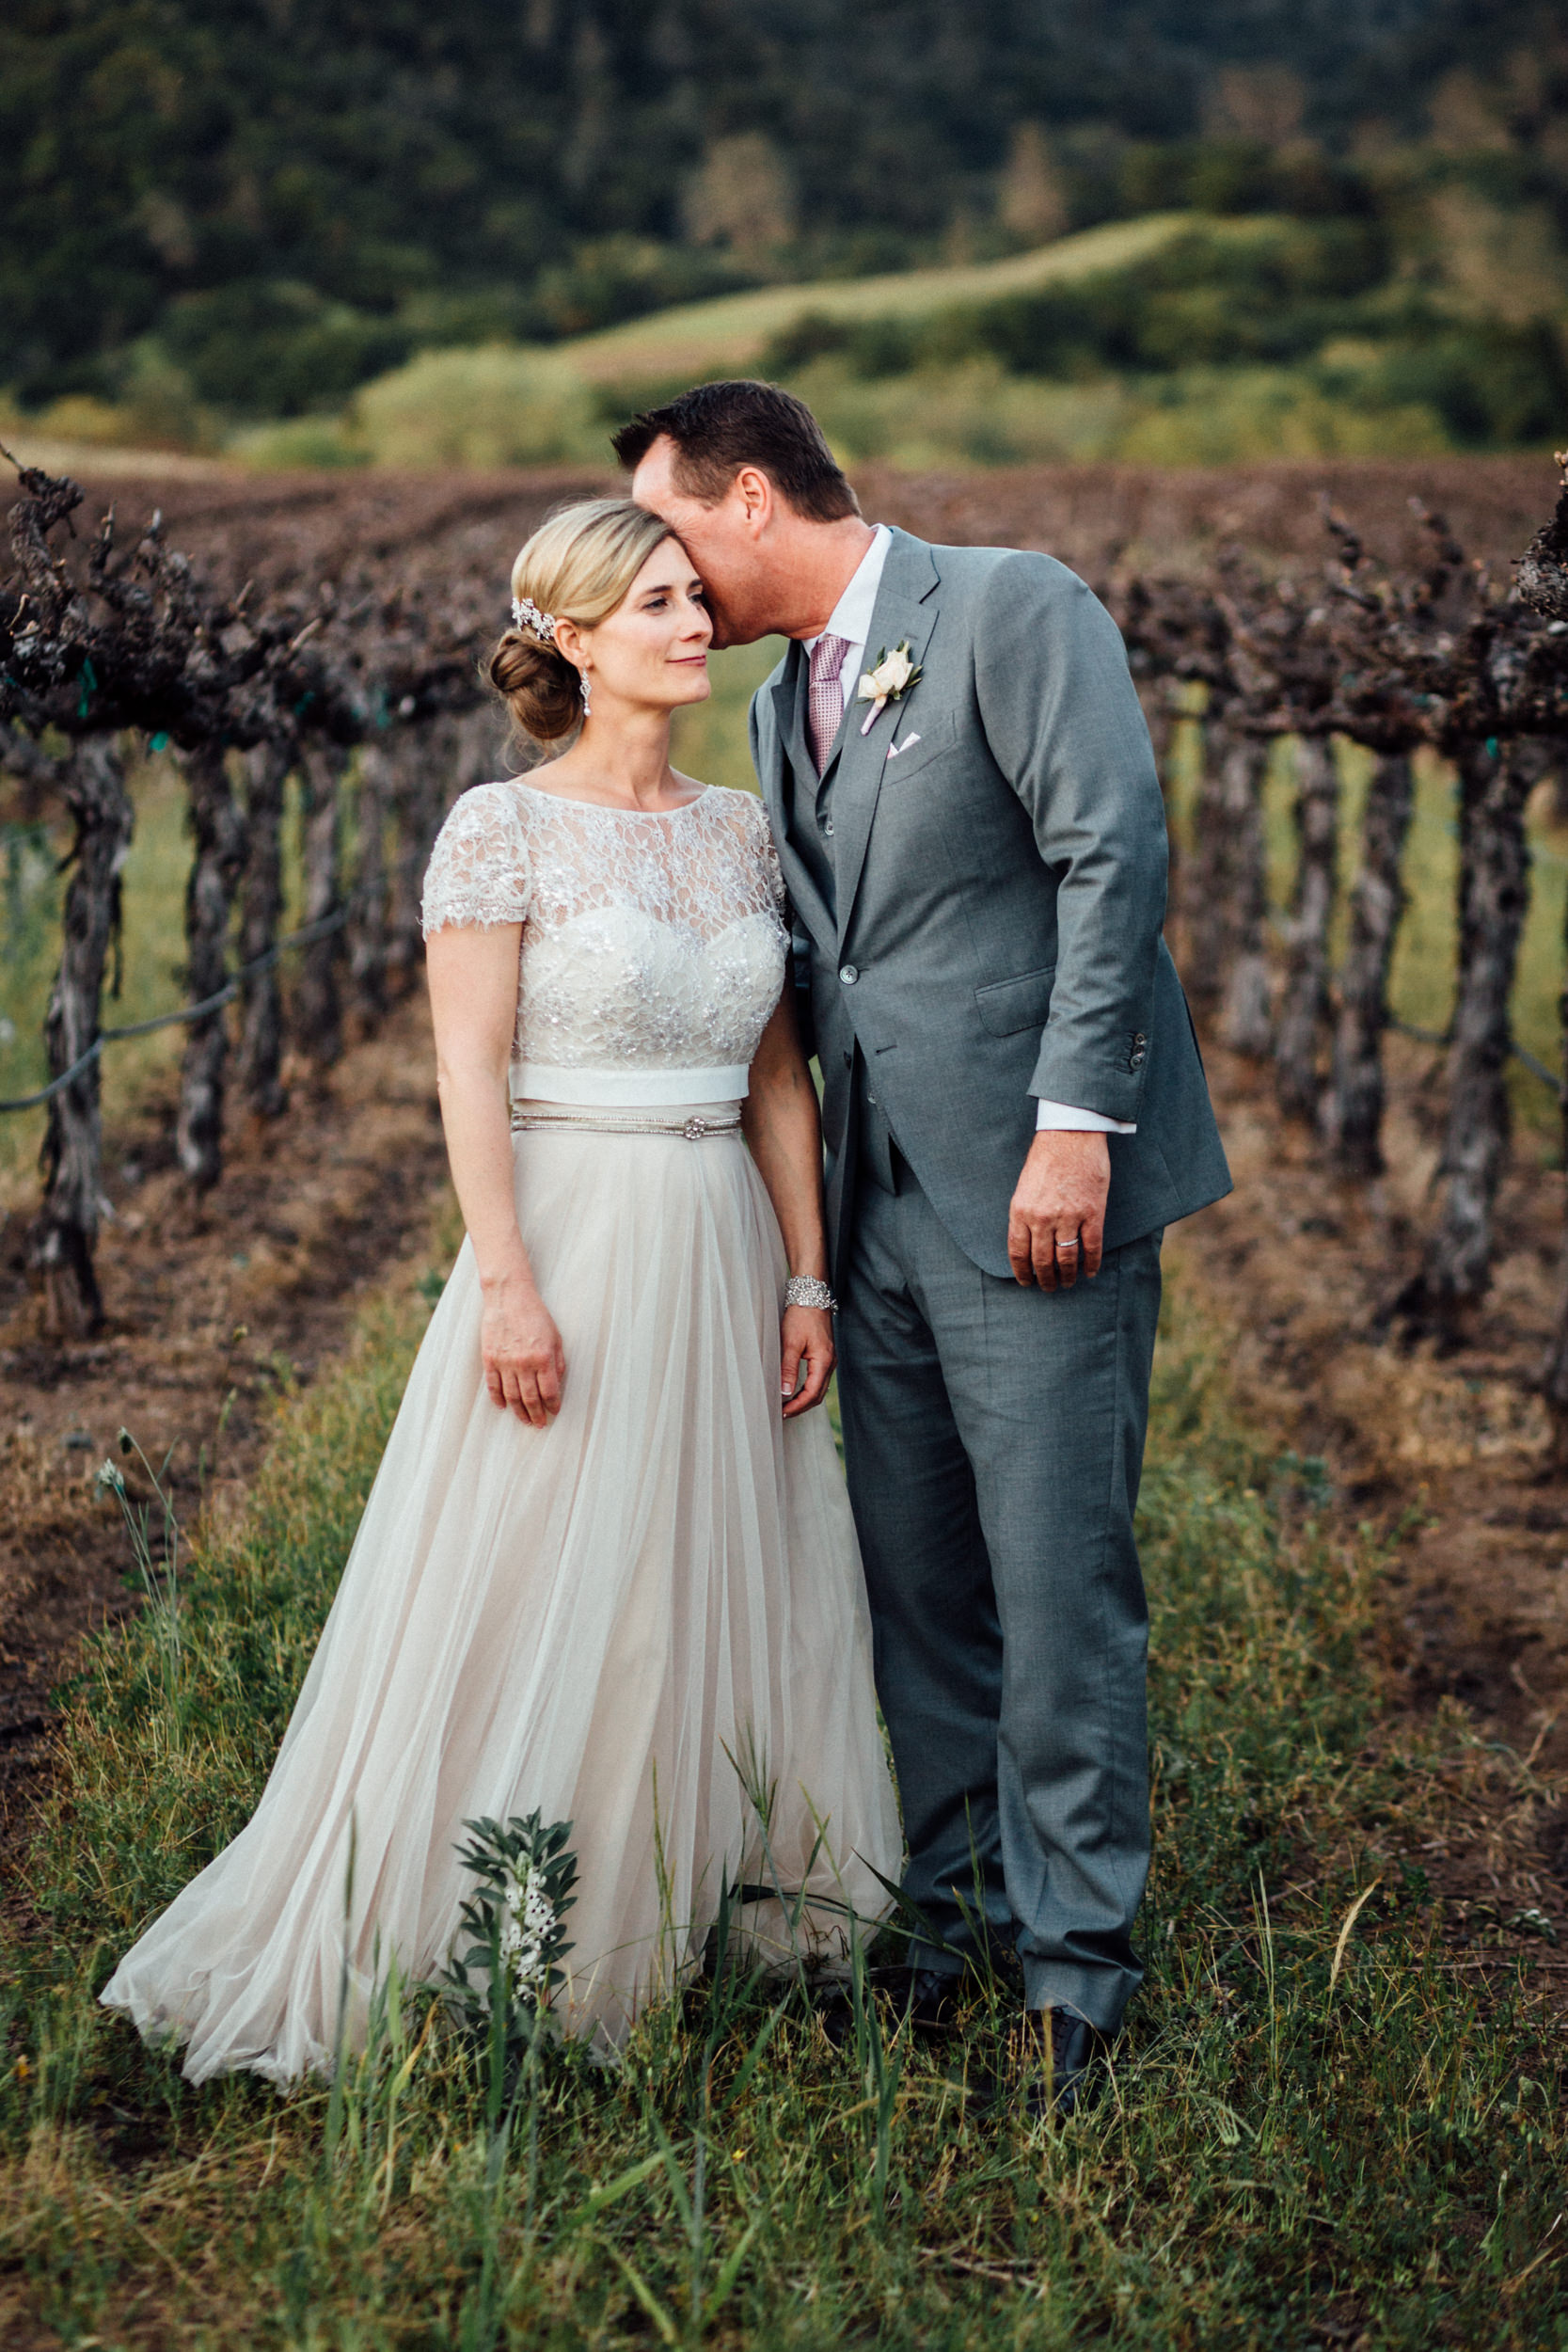 Groom whispering to bride in vineyard